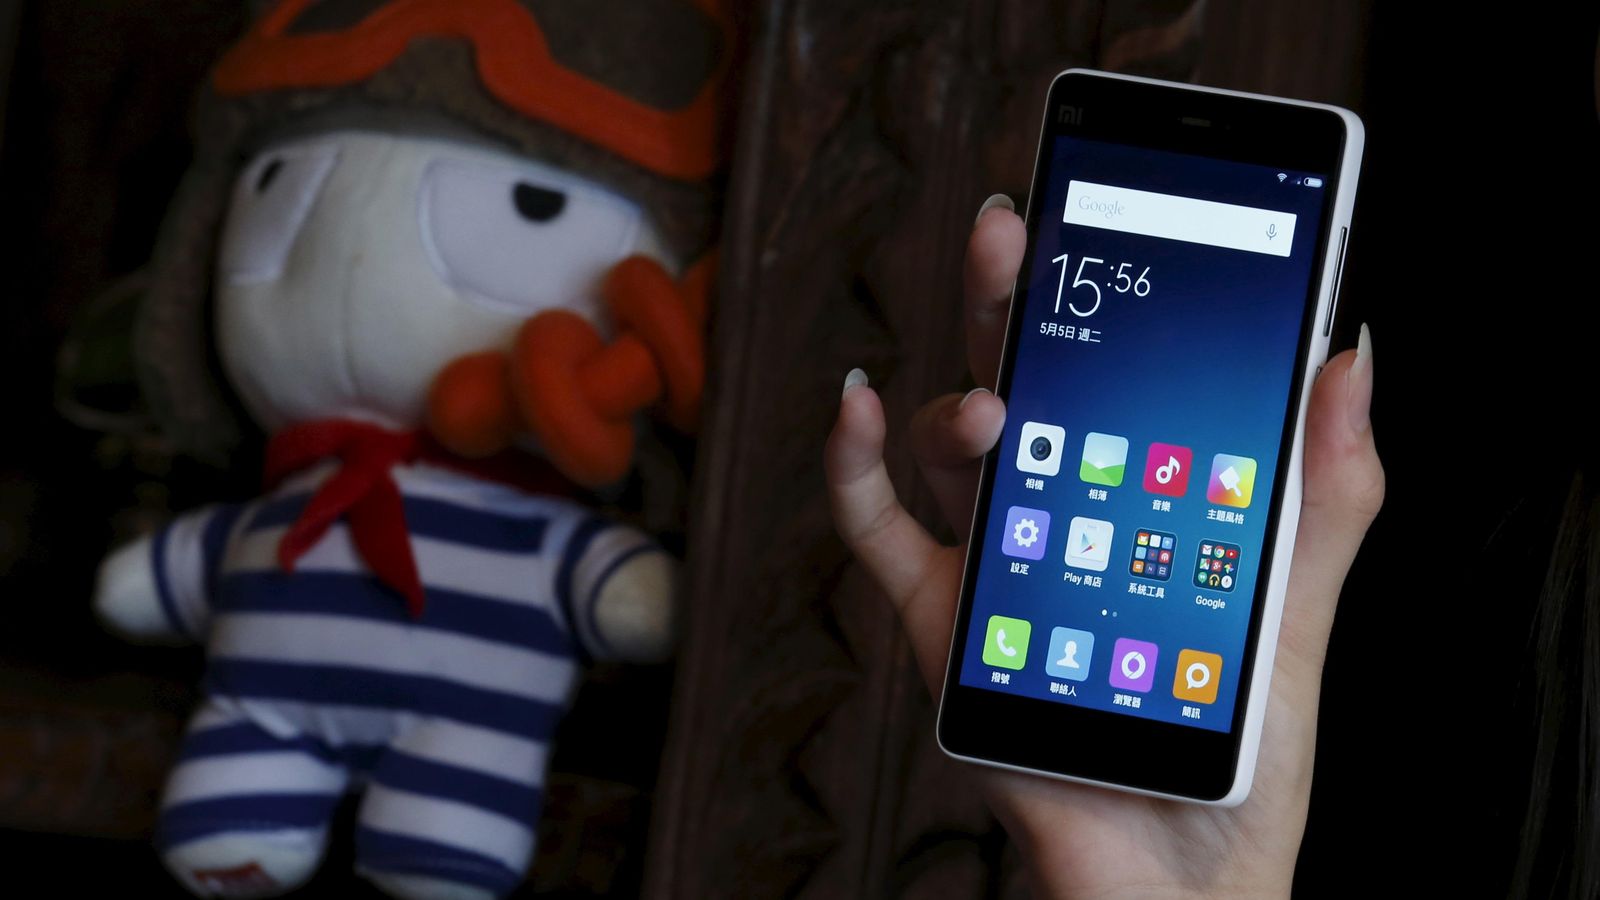 Foto: Uno de los smartphones de la compañía china Xiaomi, el Mi 4i. (Foto: Reuters)